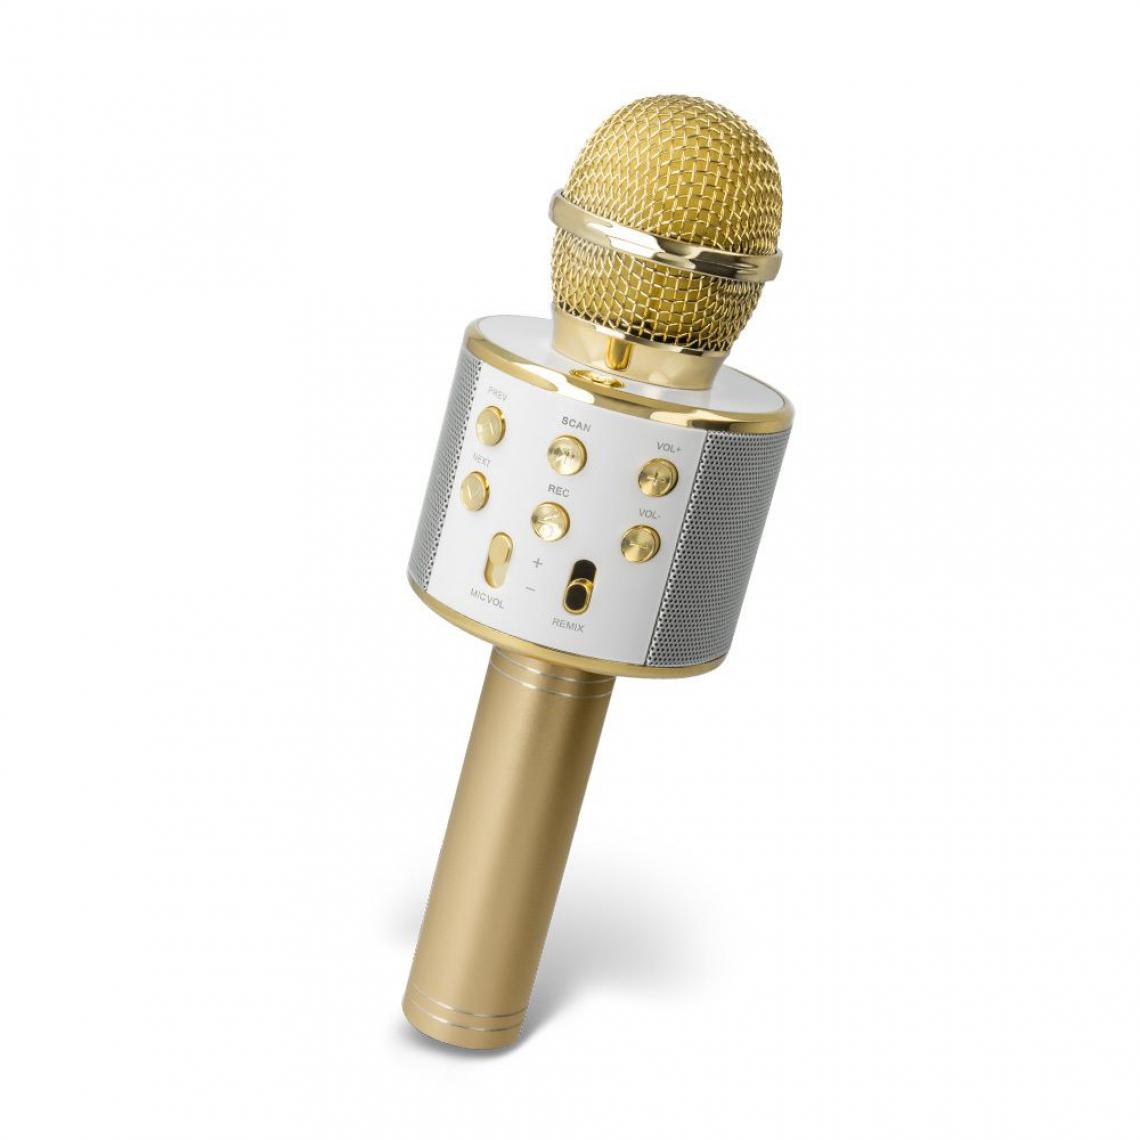 Ozzzo - Microphone Karaoke bluetooth haut parleur ozzzo Gold Or pour UMiDIGI A7S - Autres accessoires smartphone